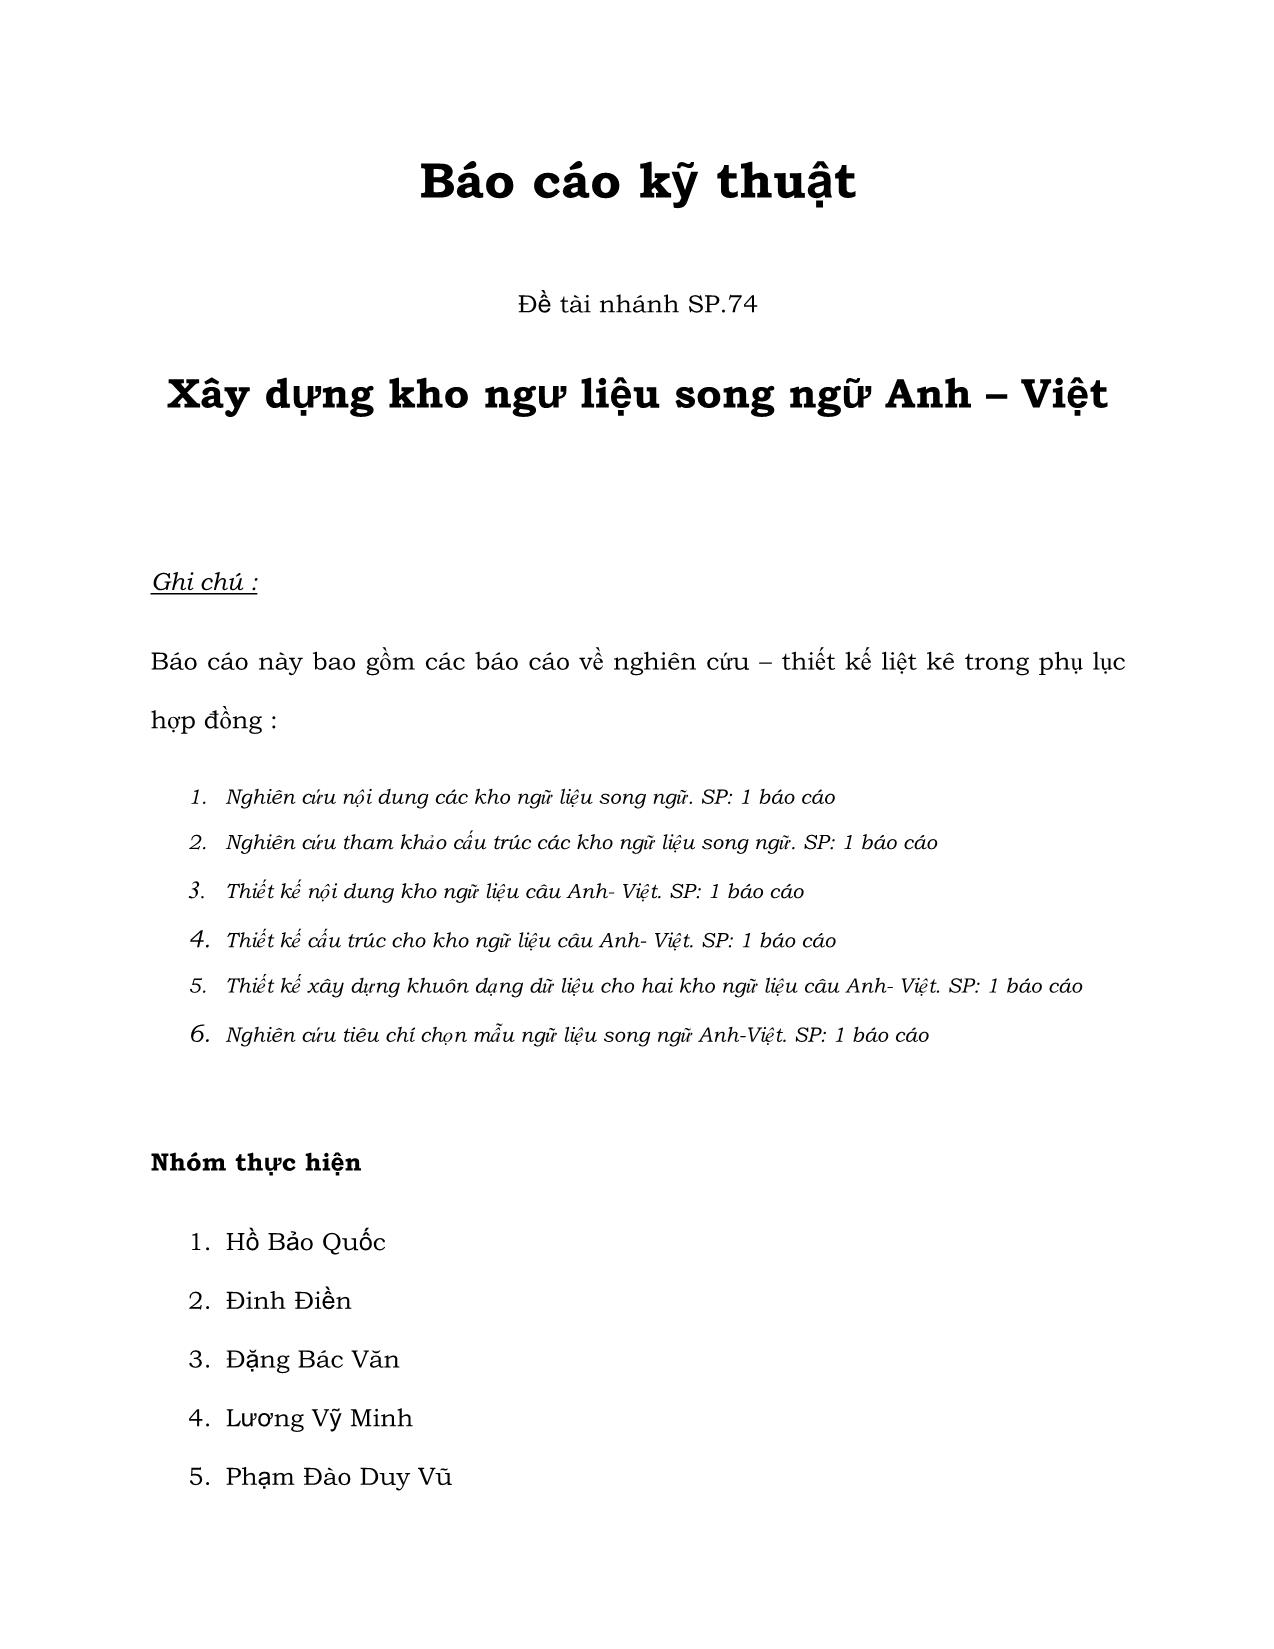 Báo cáo kỹ thuật Xây dựng kho ngữ liệu song ngữ Anh - Việt trang 1